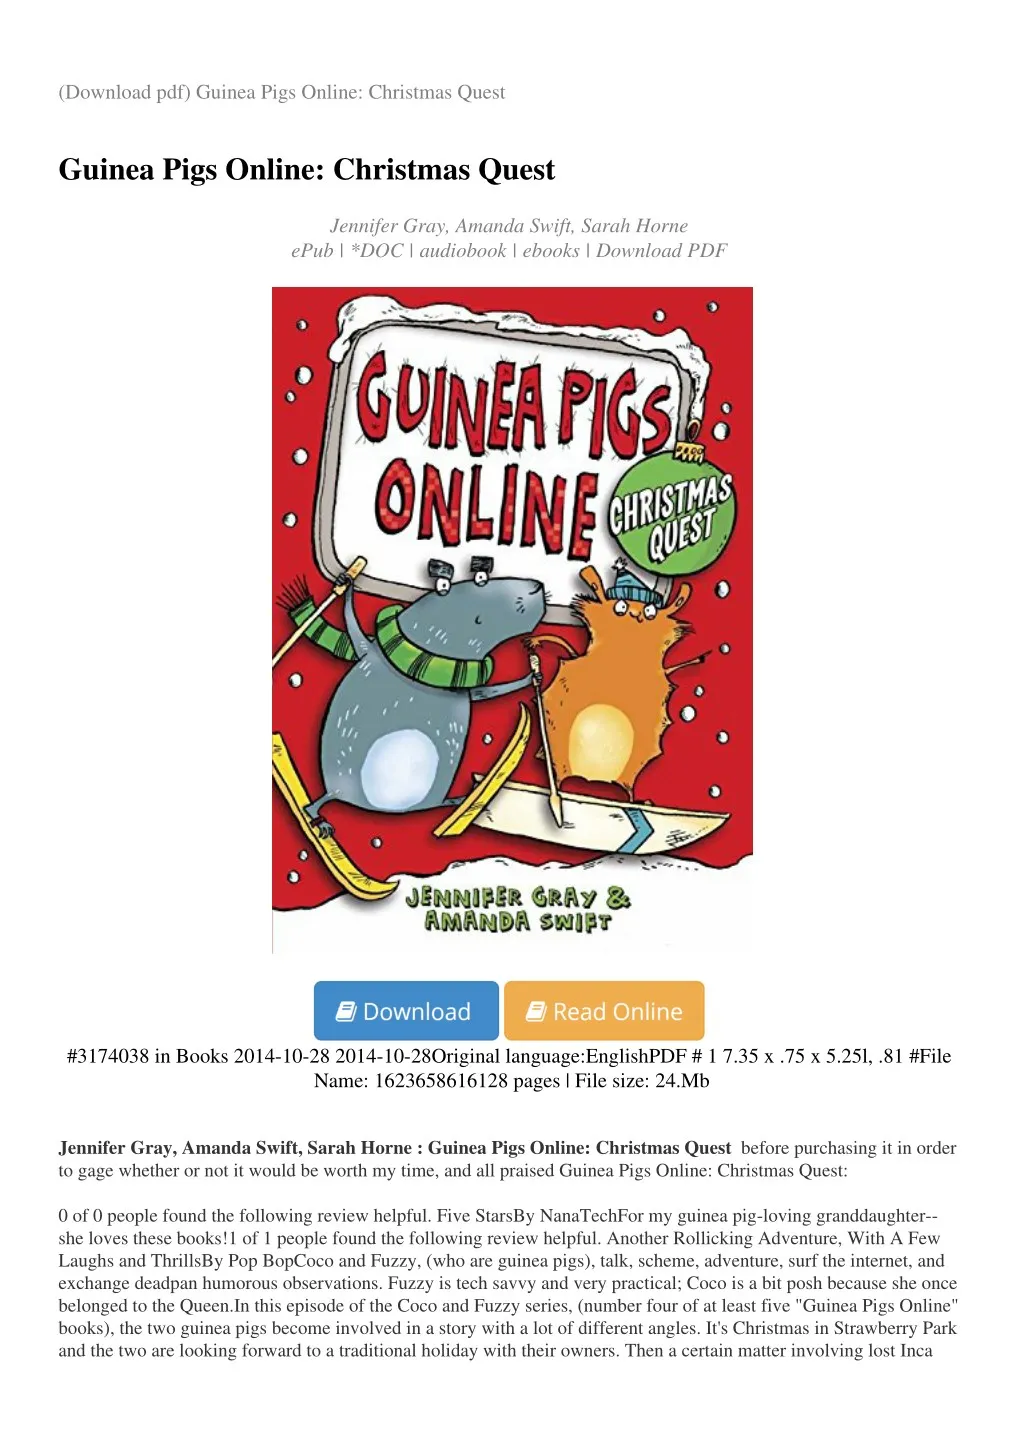 download pdf guinea pigs online christmas quest